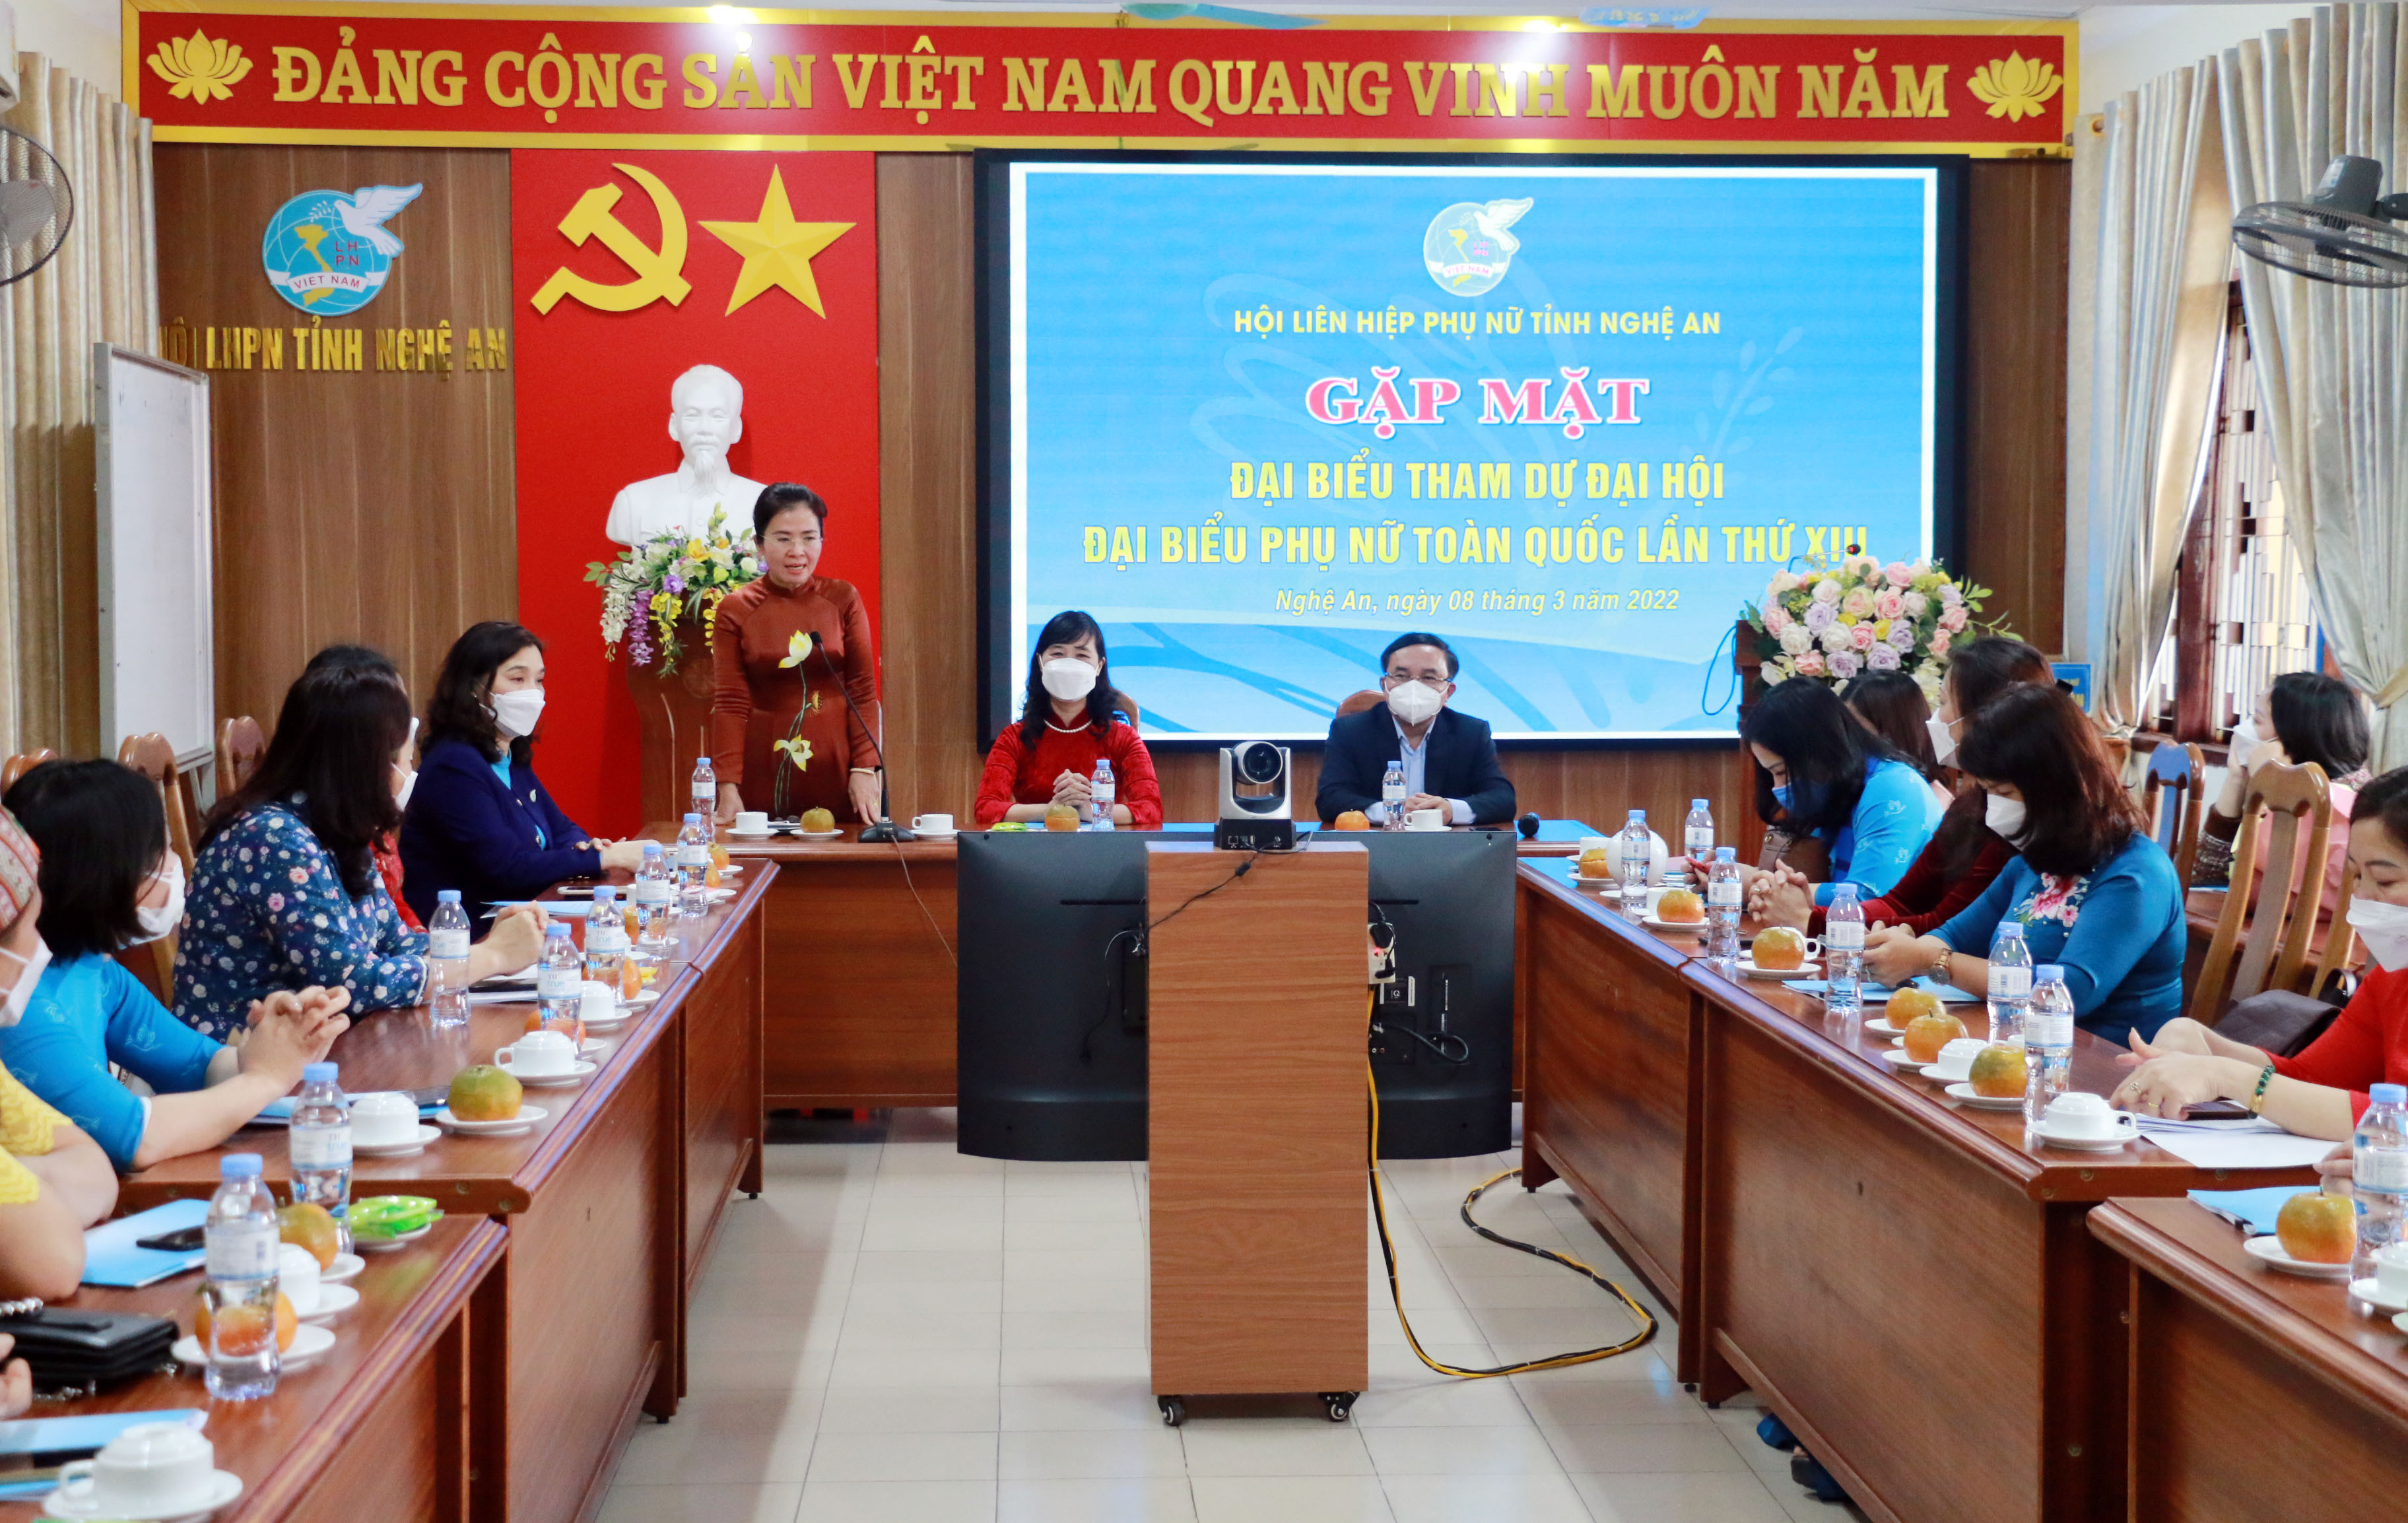 Đồng chí Võ Thị Minh Sinh phát biểu tại buổi gặp mặt. Ảnh: MH